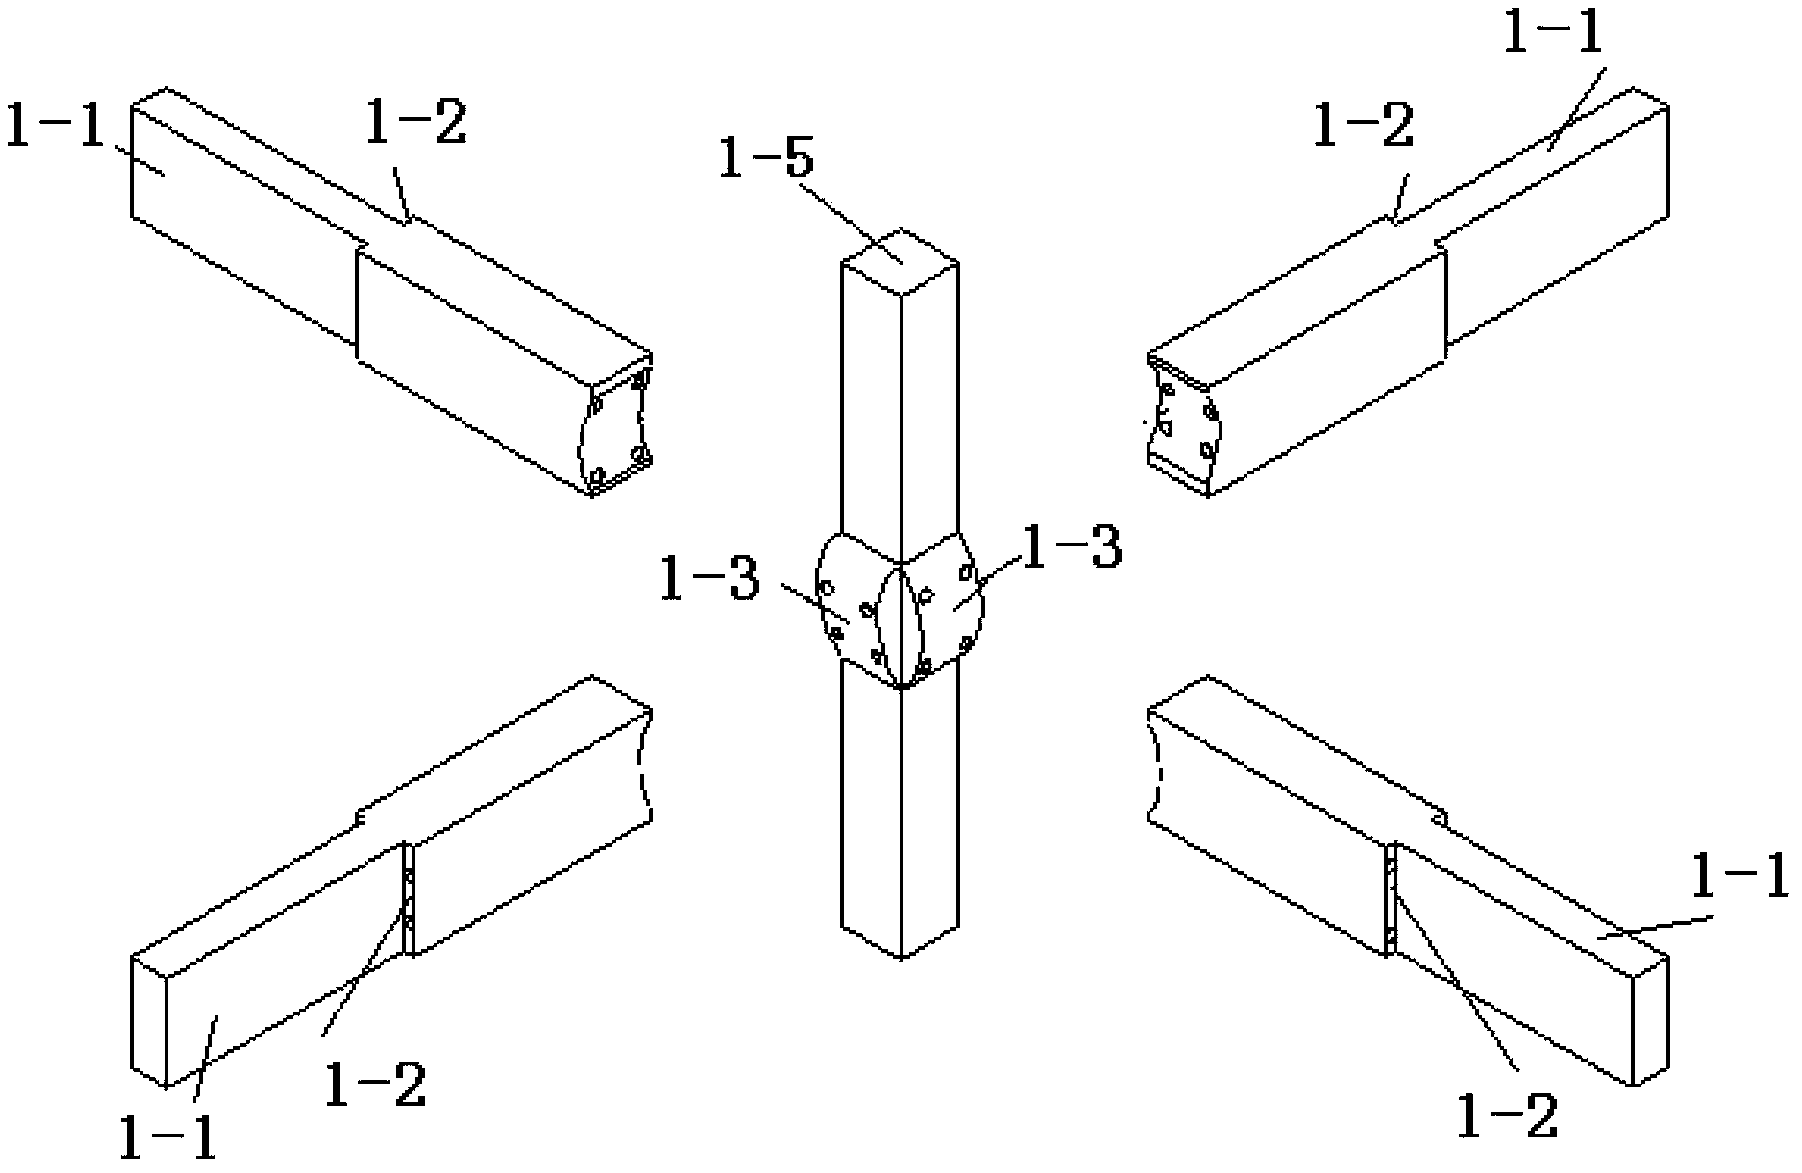 Prestress assembly frame structure